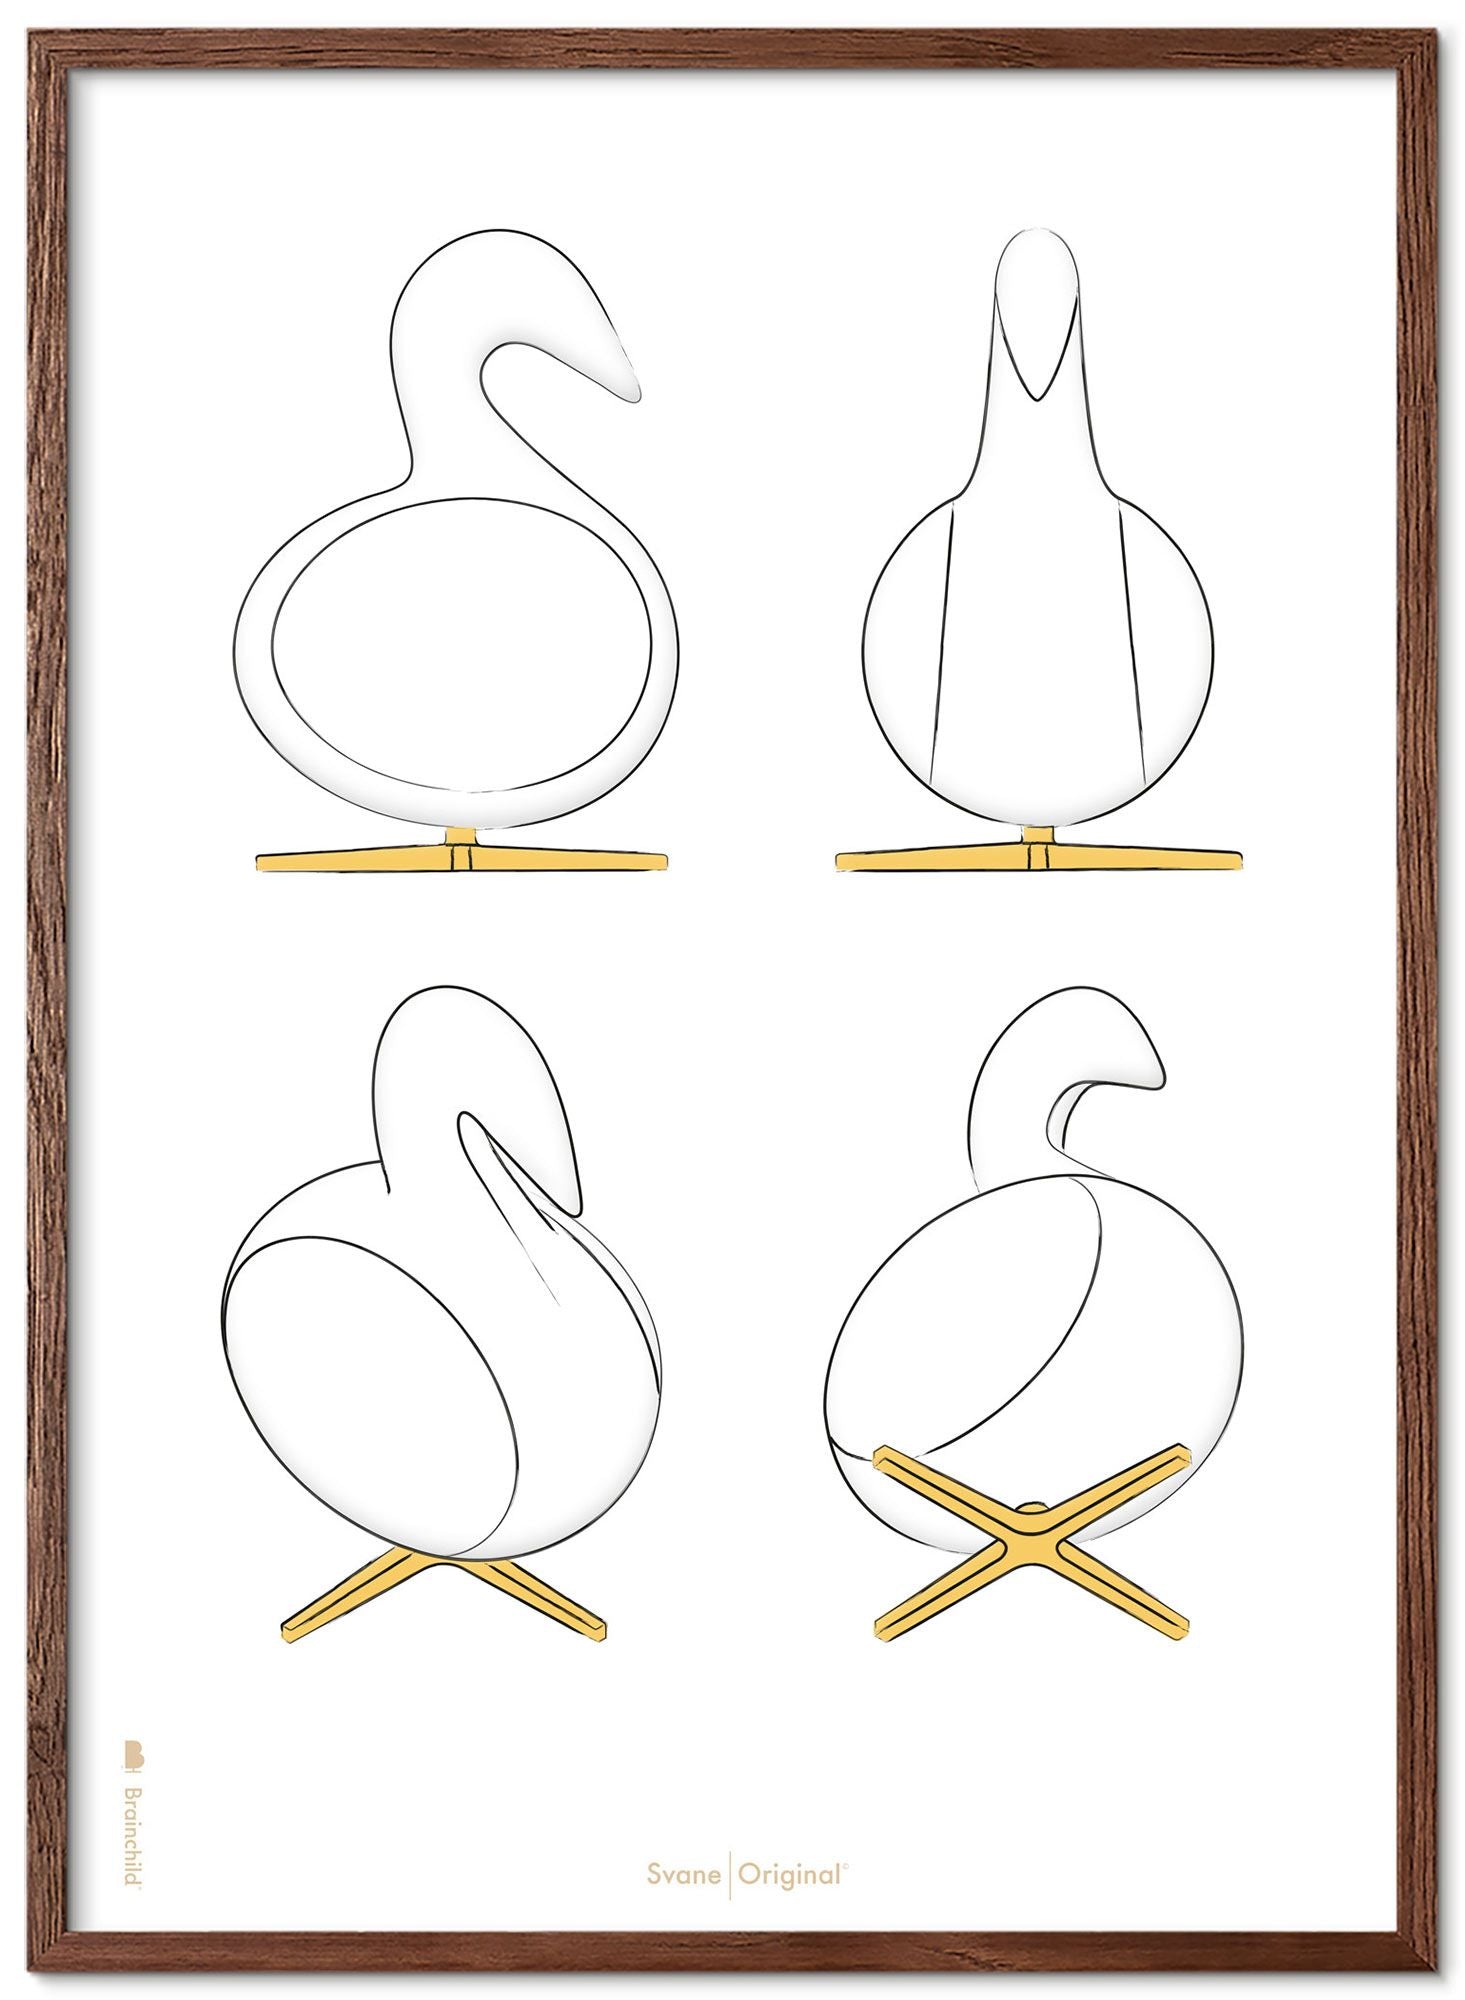 Brainchild Swan Design Sketches Poster Frame Made Of Dark Wood 70x100 Cm, White Background